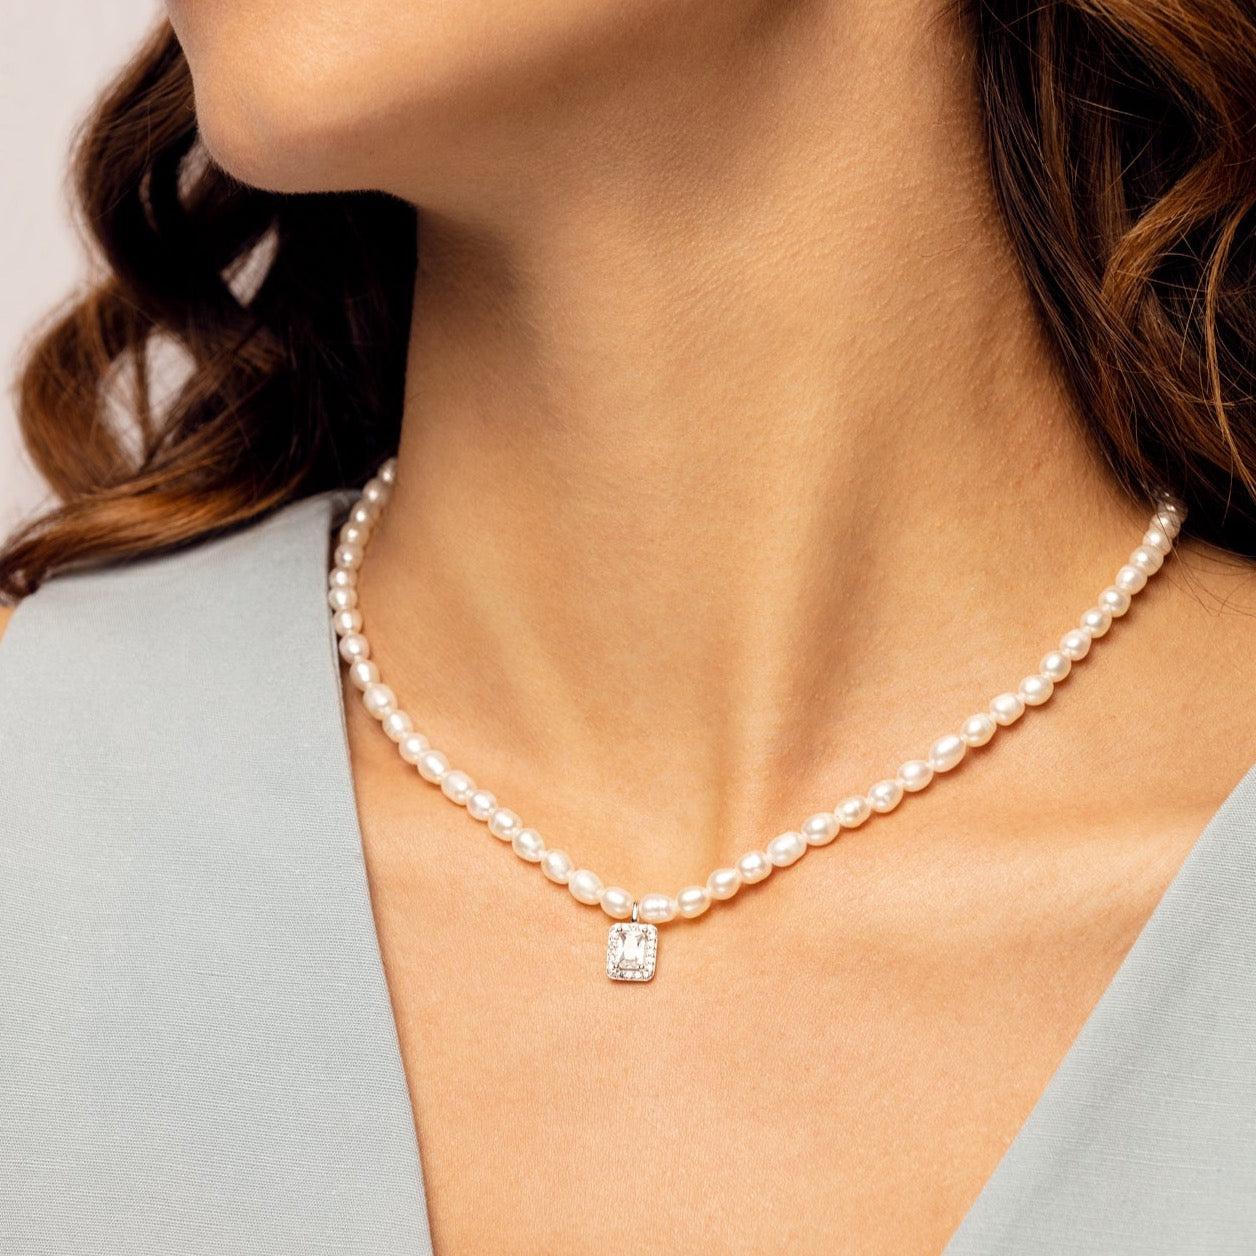 Ik heb het erkend Geen voor de helft Natural Freshwater Pearl Necklace with Square Zircon Pendant – Ainico